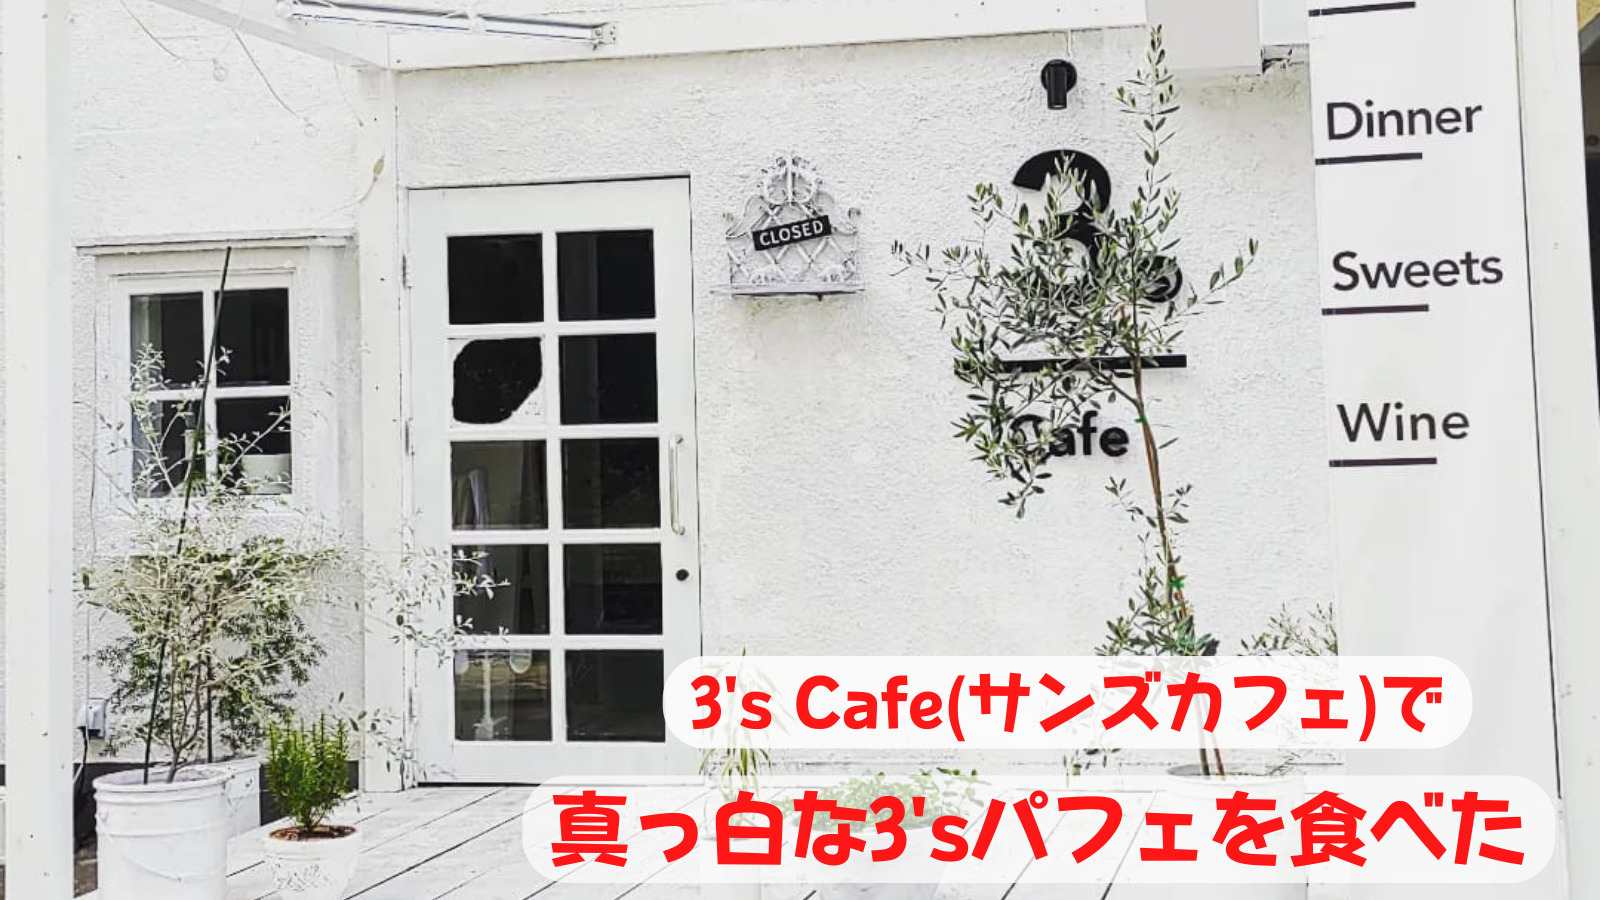 3's cafe